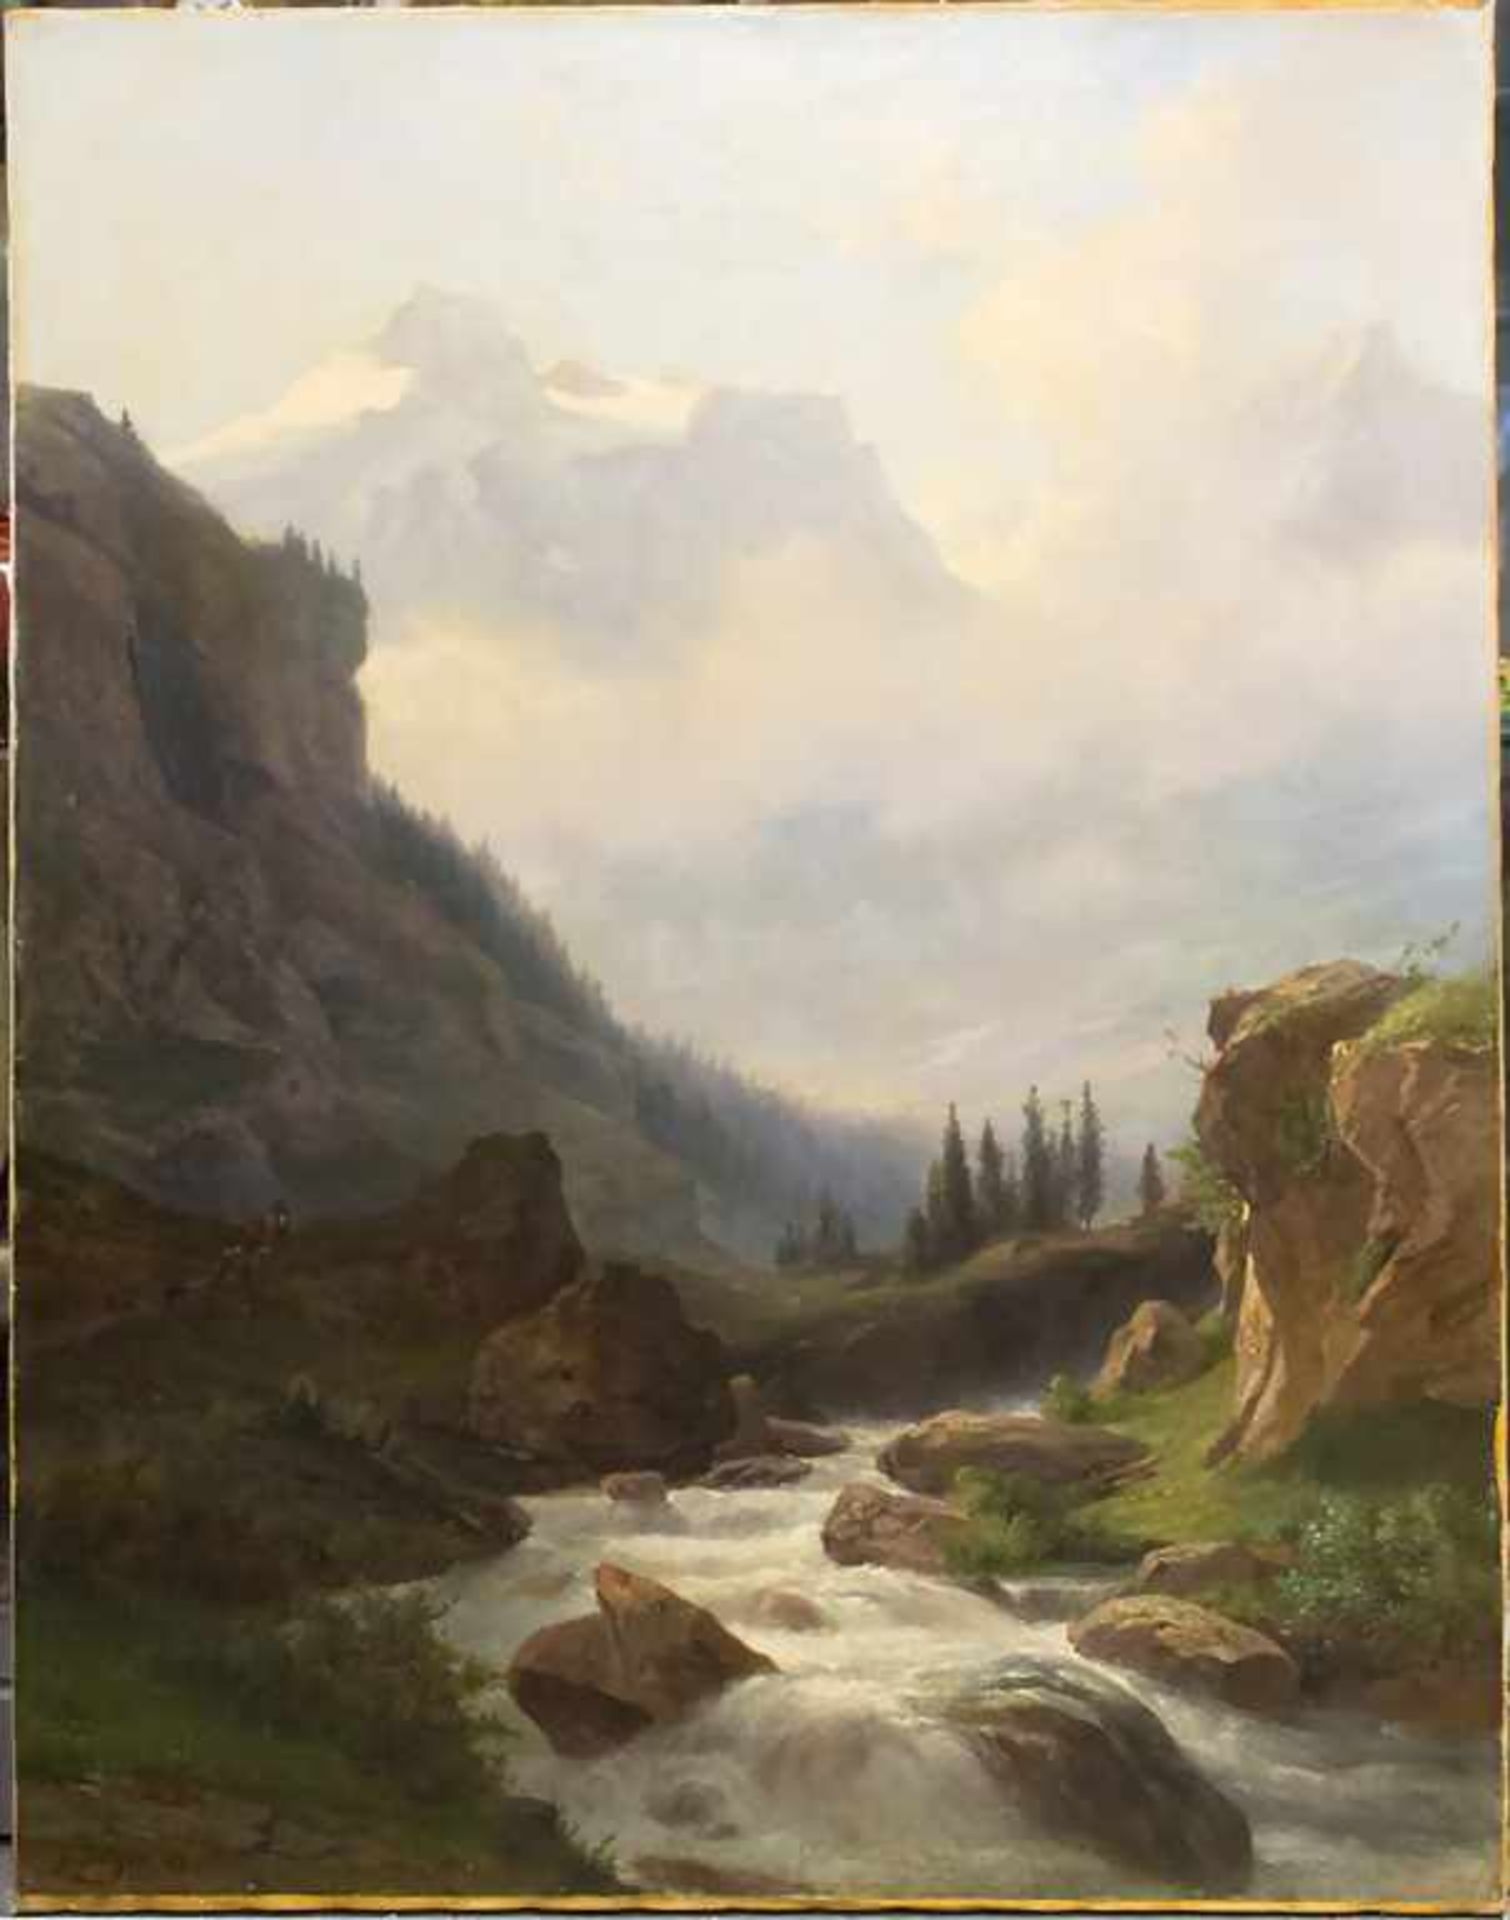 Jakob Joseph Zelger (1812-1885), 'Gebirgsbach Reuss vor Bergkulisse' / 'The mountain stream Reus